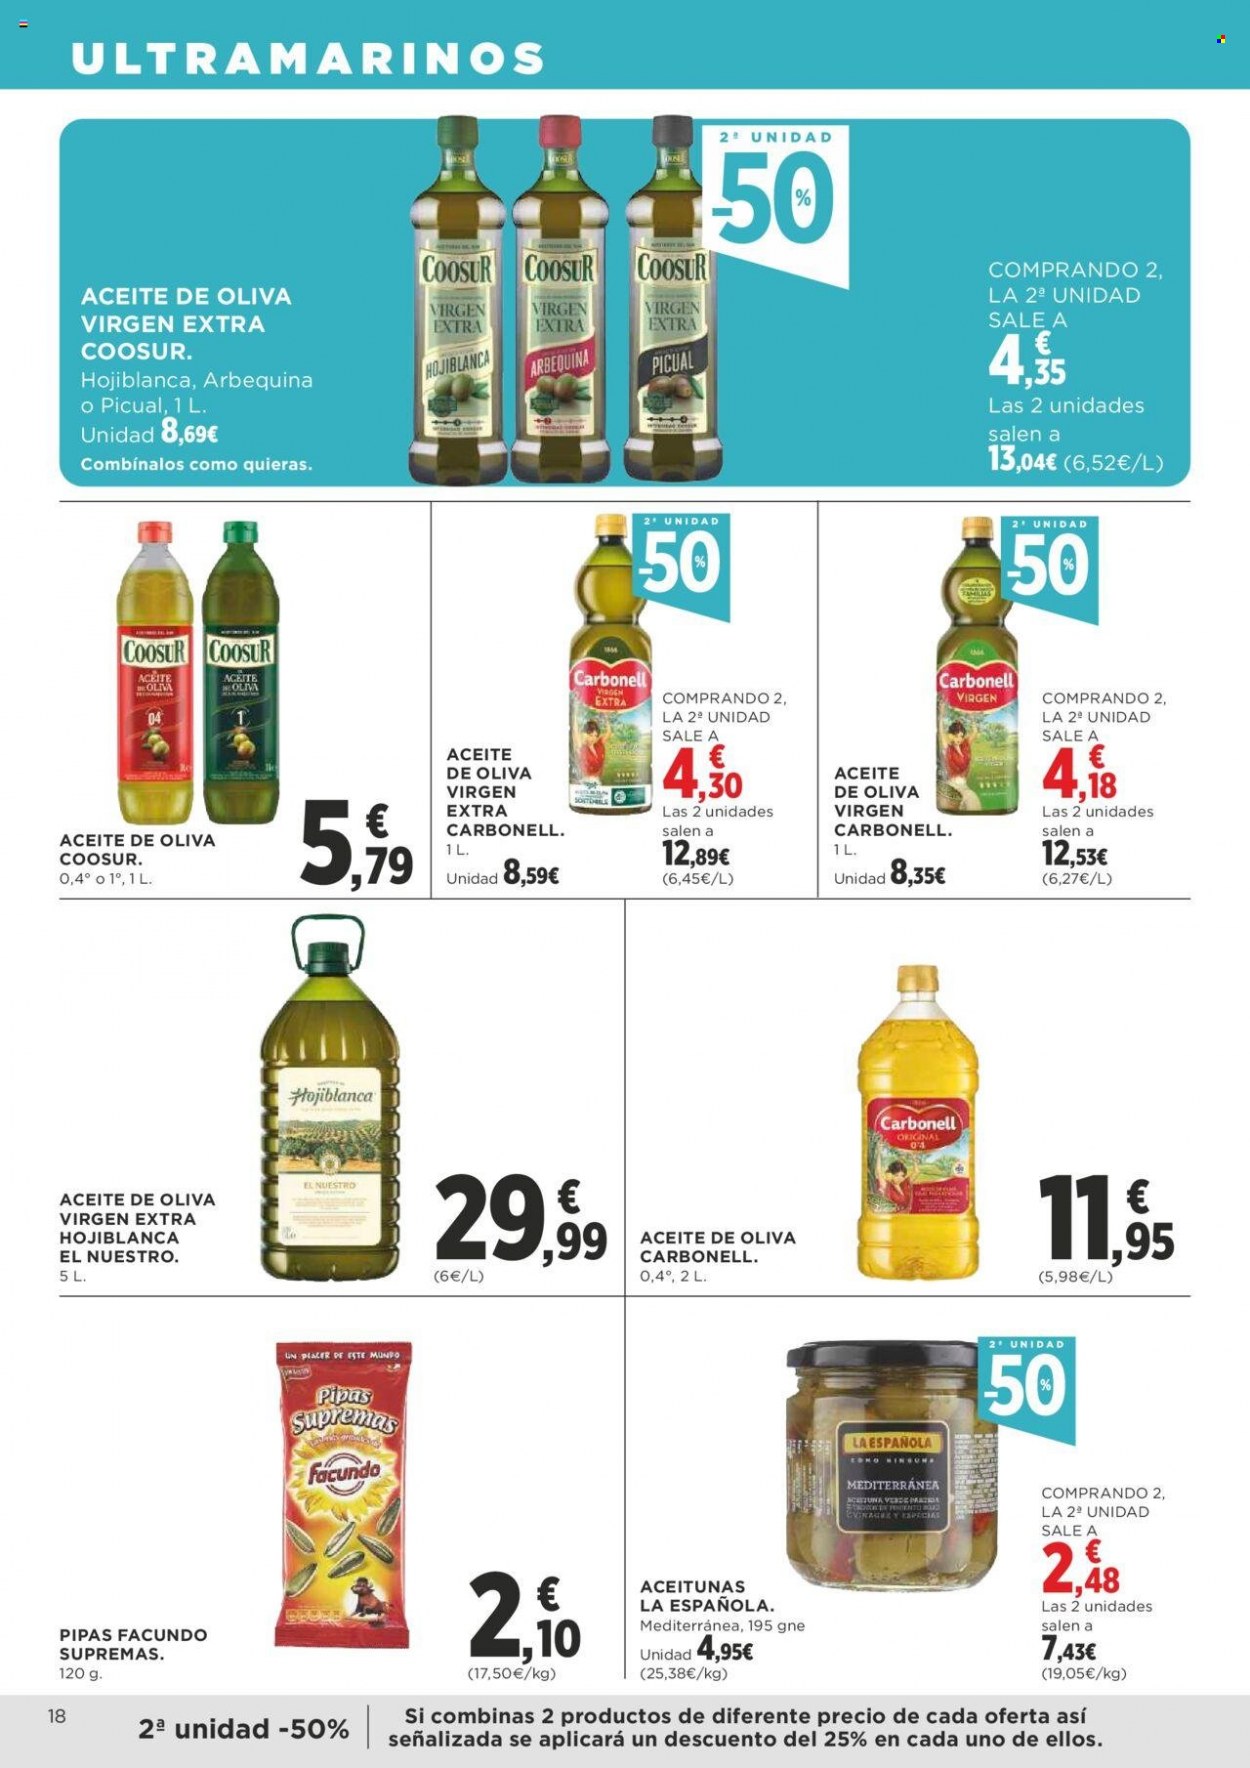 thumbnail - Folleto actual Supercor supermercados - 09/03/23 - 22/03/23 - Ventas - semillas de girasol, Carbonell, aceitunas verdes, aceite, aceite de oliva, aceite de oliva extra virgen, Coosur. Página 18.